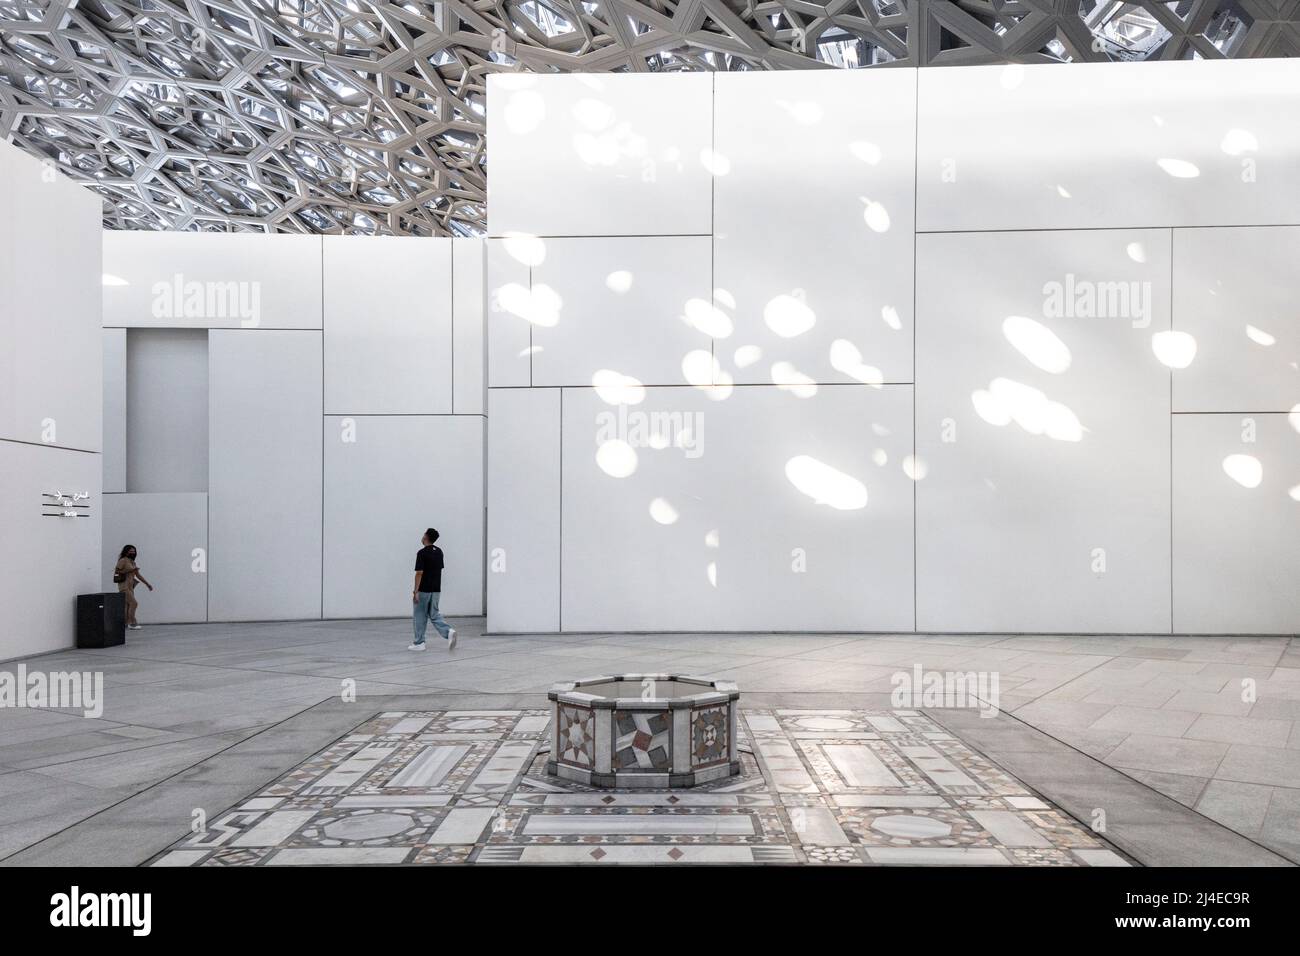 ÎLE DE SAADIYAT, ABU DHABI, ÉMIRATS ARABES UNIS - 16 octobre 2021 : le Louvre Abu Dhabi conçu par l'architecte Jean nouvel sur l'île de Saadiyat. Banque D'Images